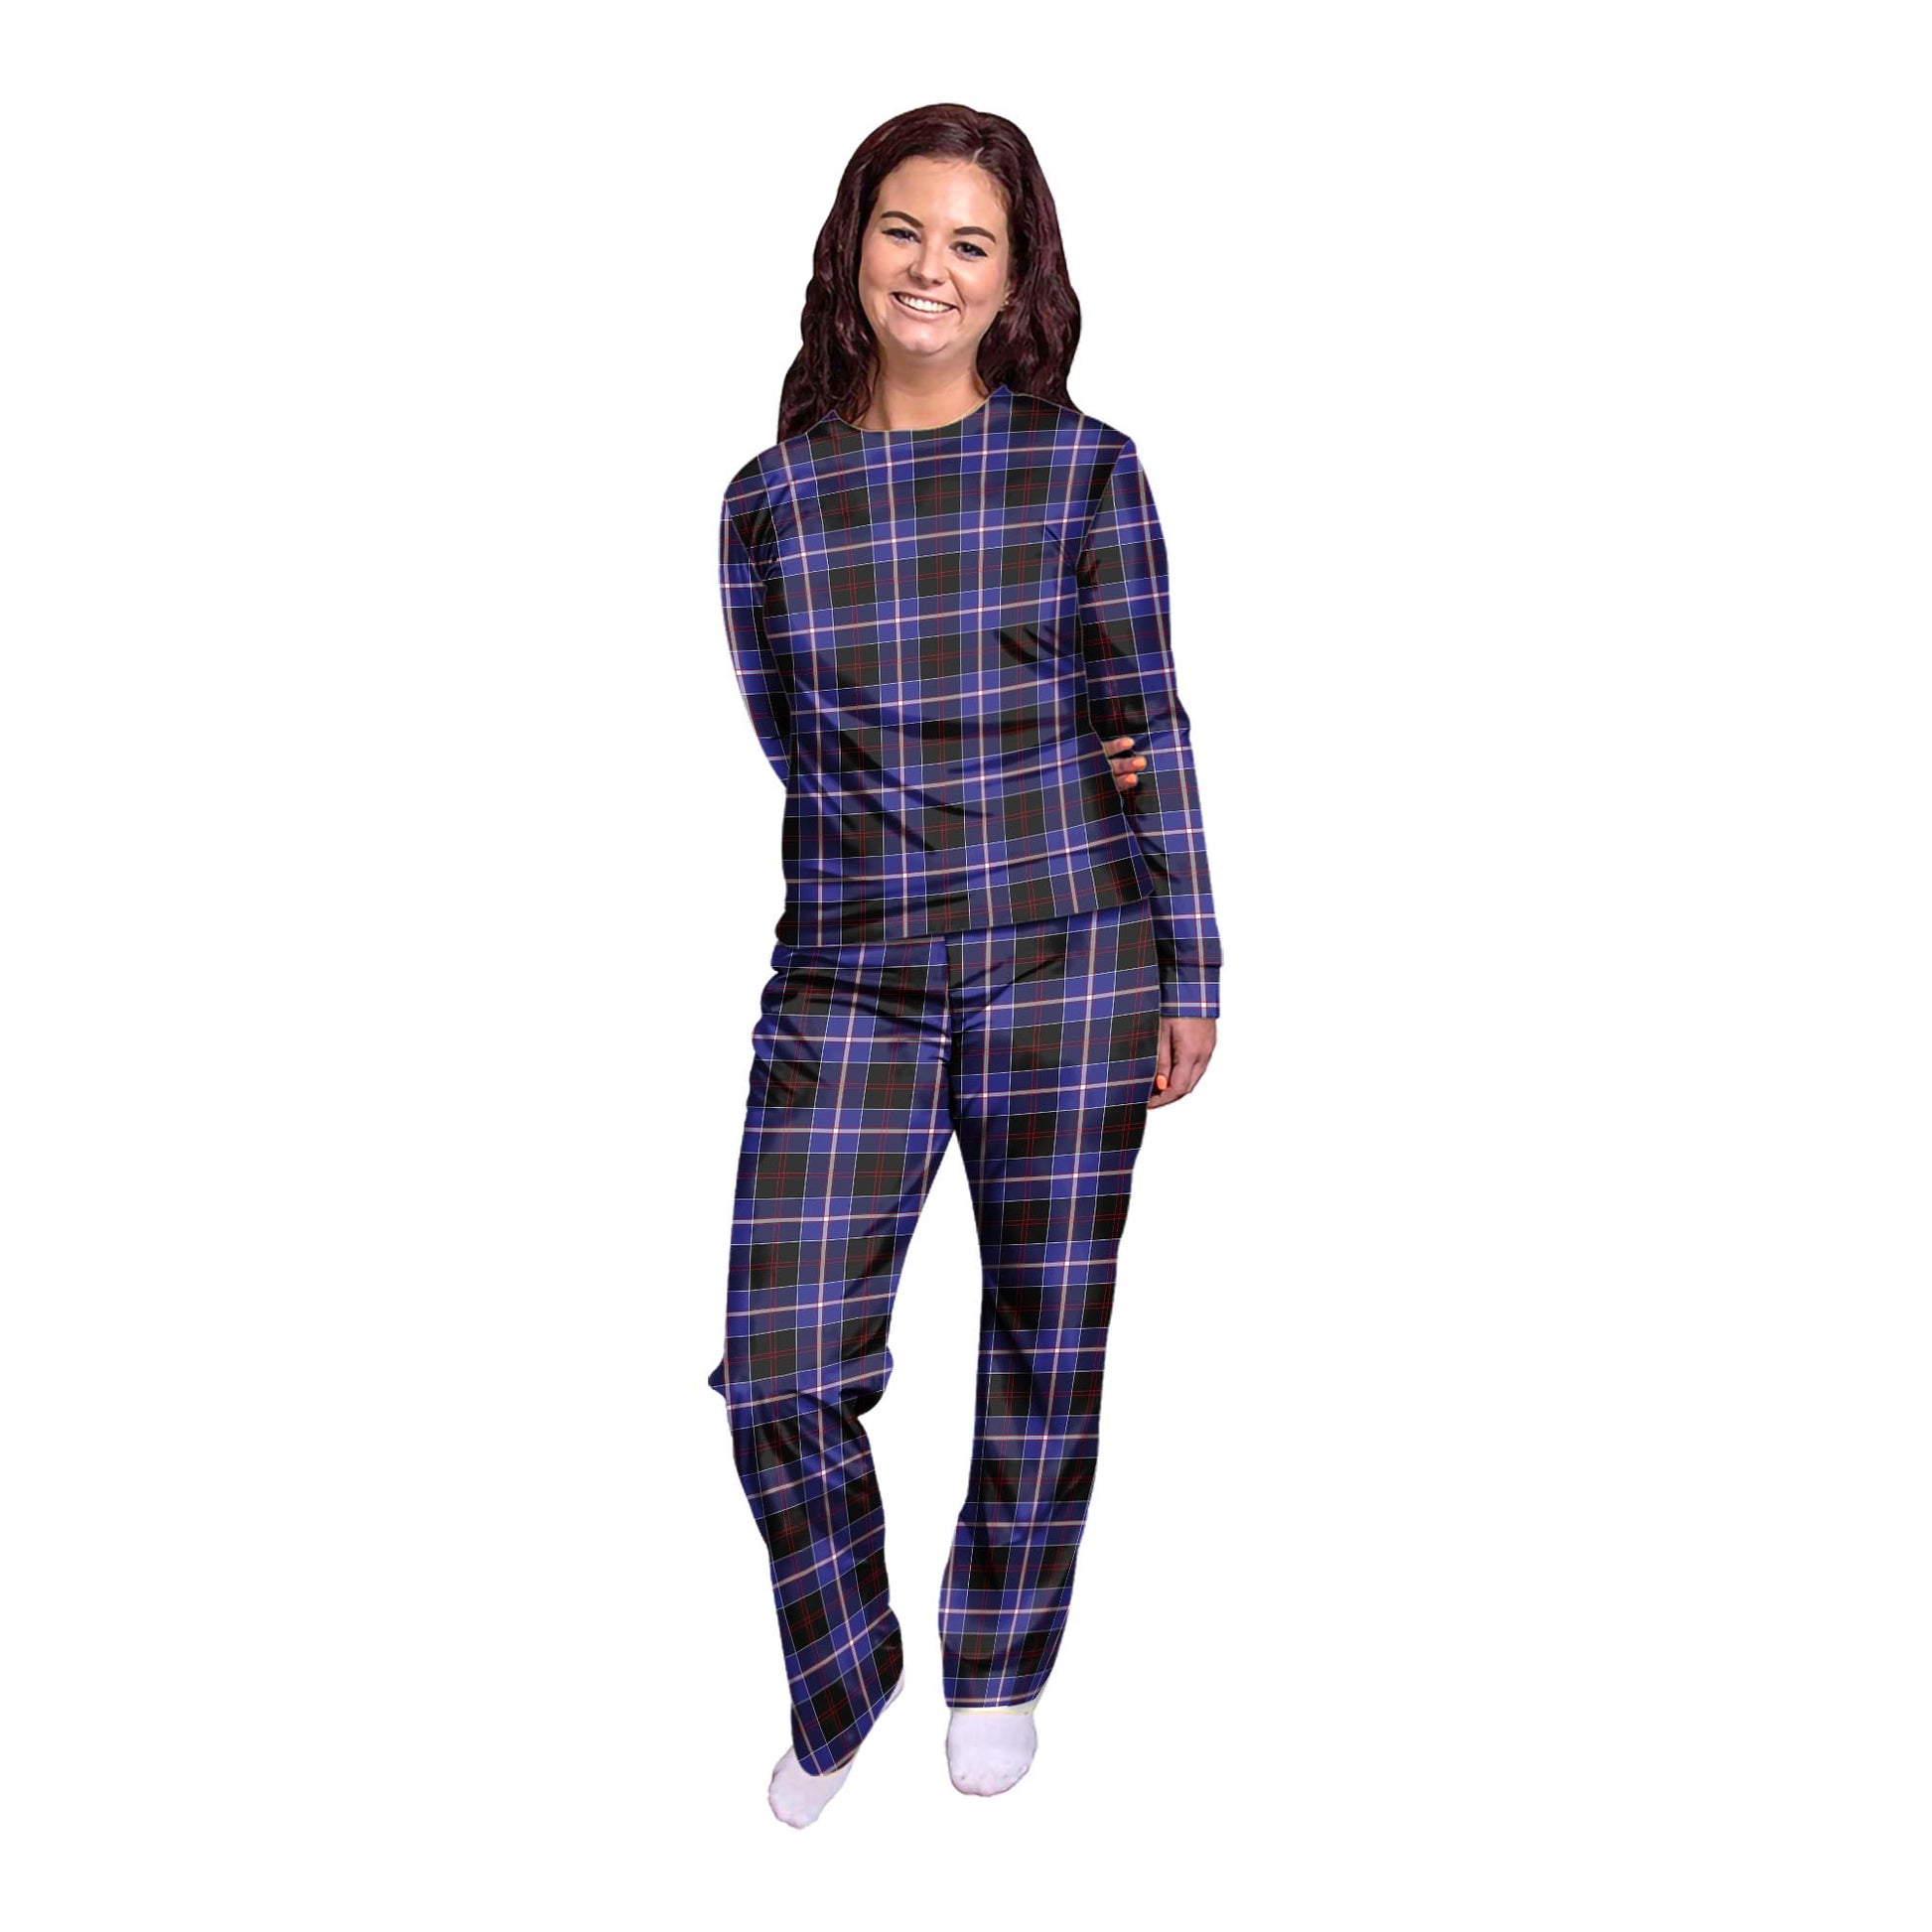 Dunlop Modern Tartan Pajamas Family Set - Tartanvibesclothing